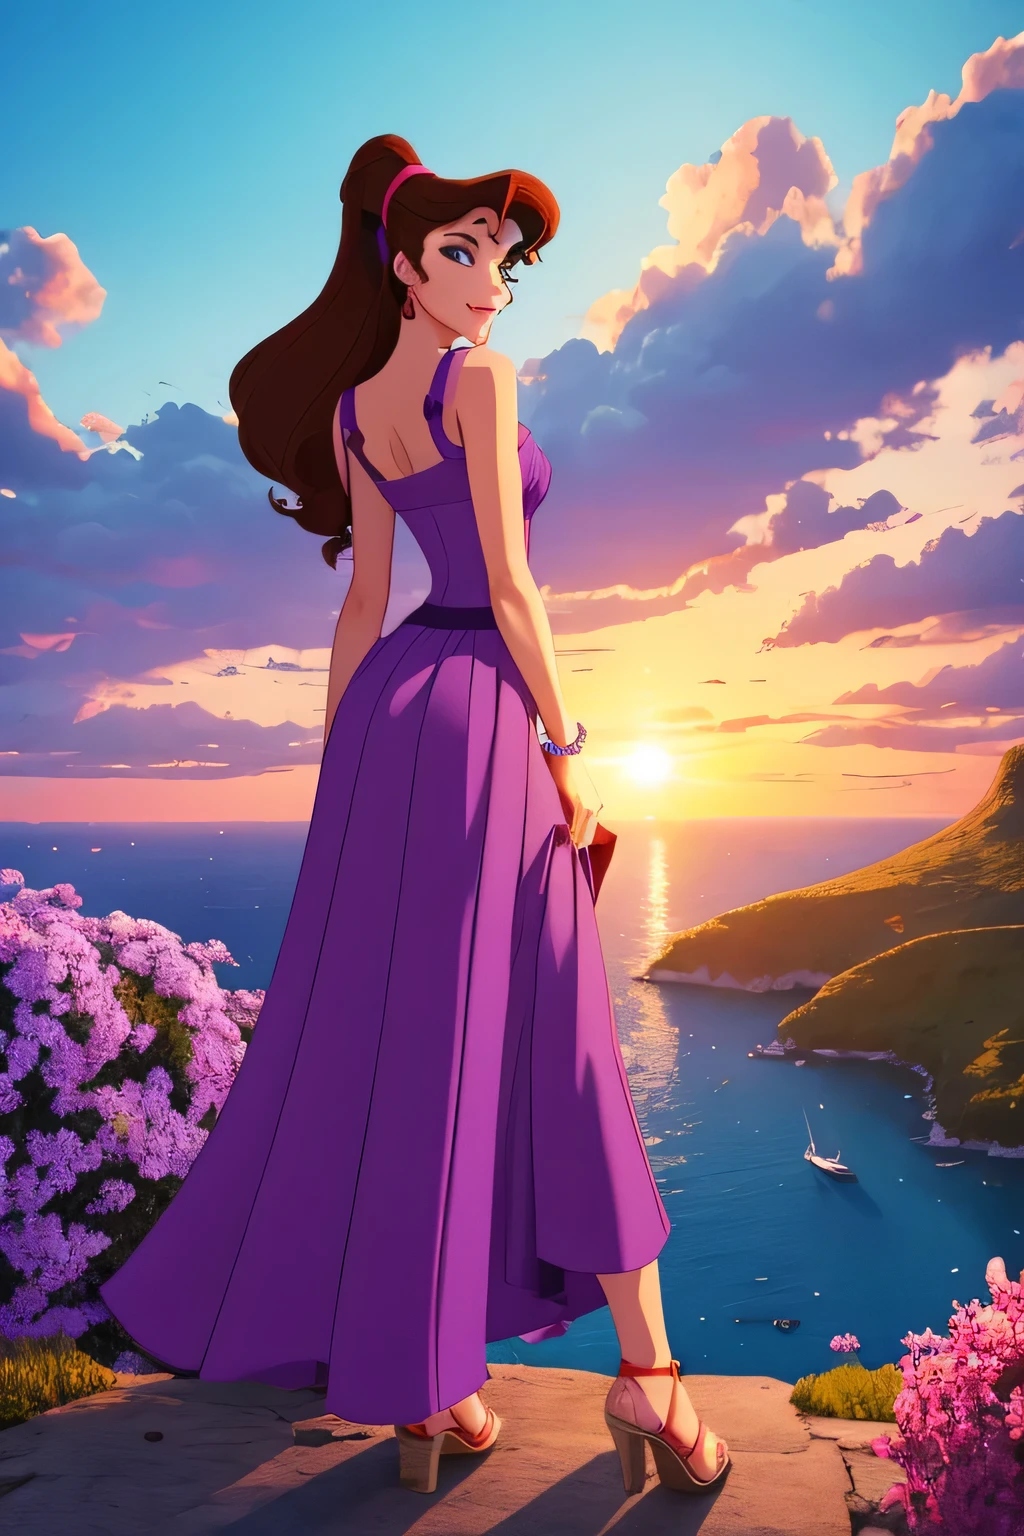 1 Mädchen Brünette Megara, trägt ein langes lila griechisches Kleid, Disney-Animationsstil, beste Qualität, digital art, 2D, im Paradies, umgeben von orangefarbenen Wolken